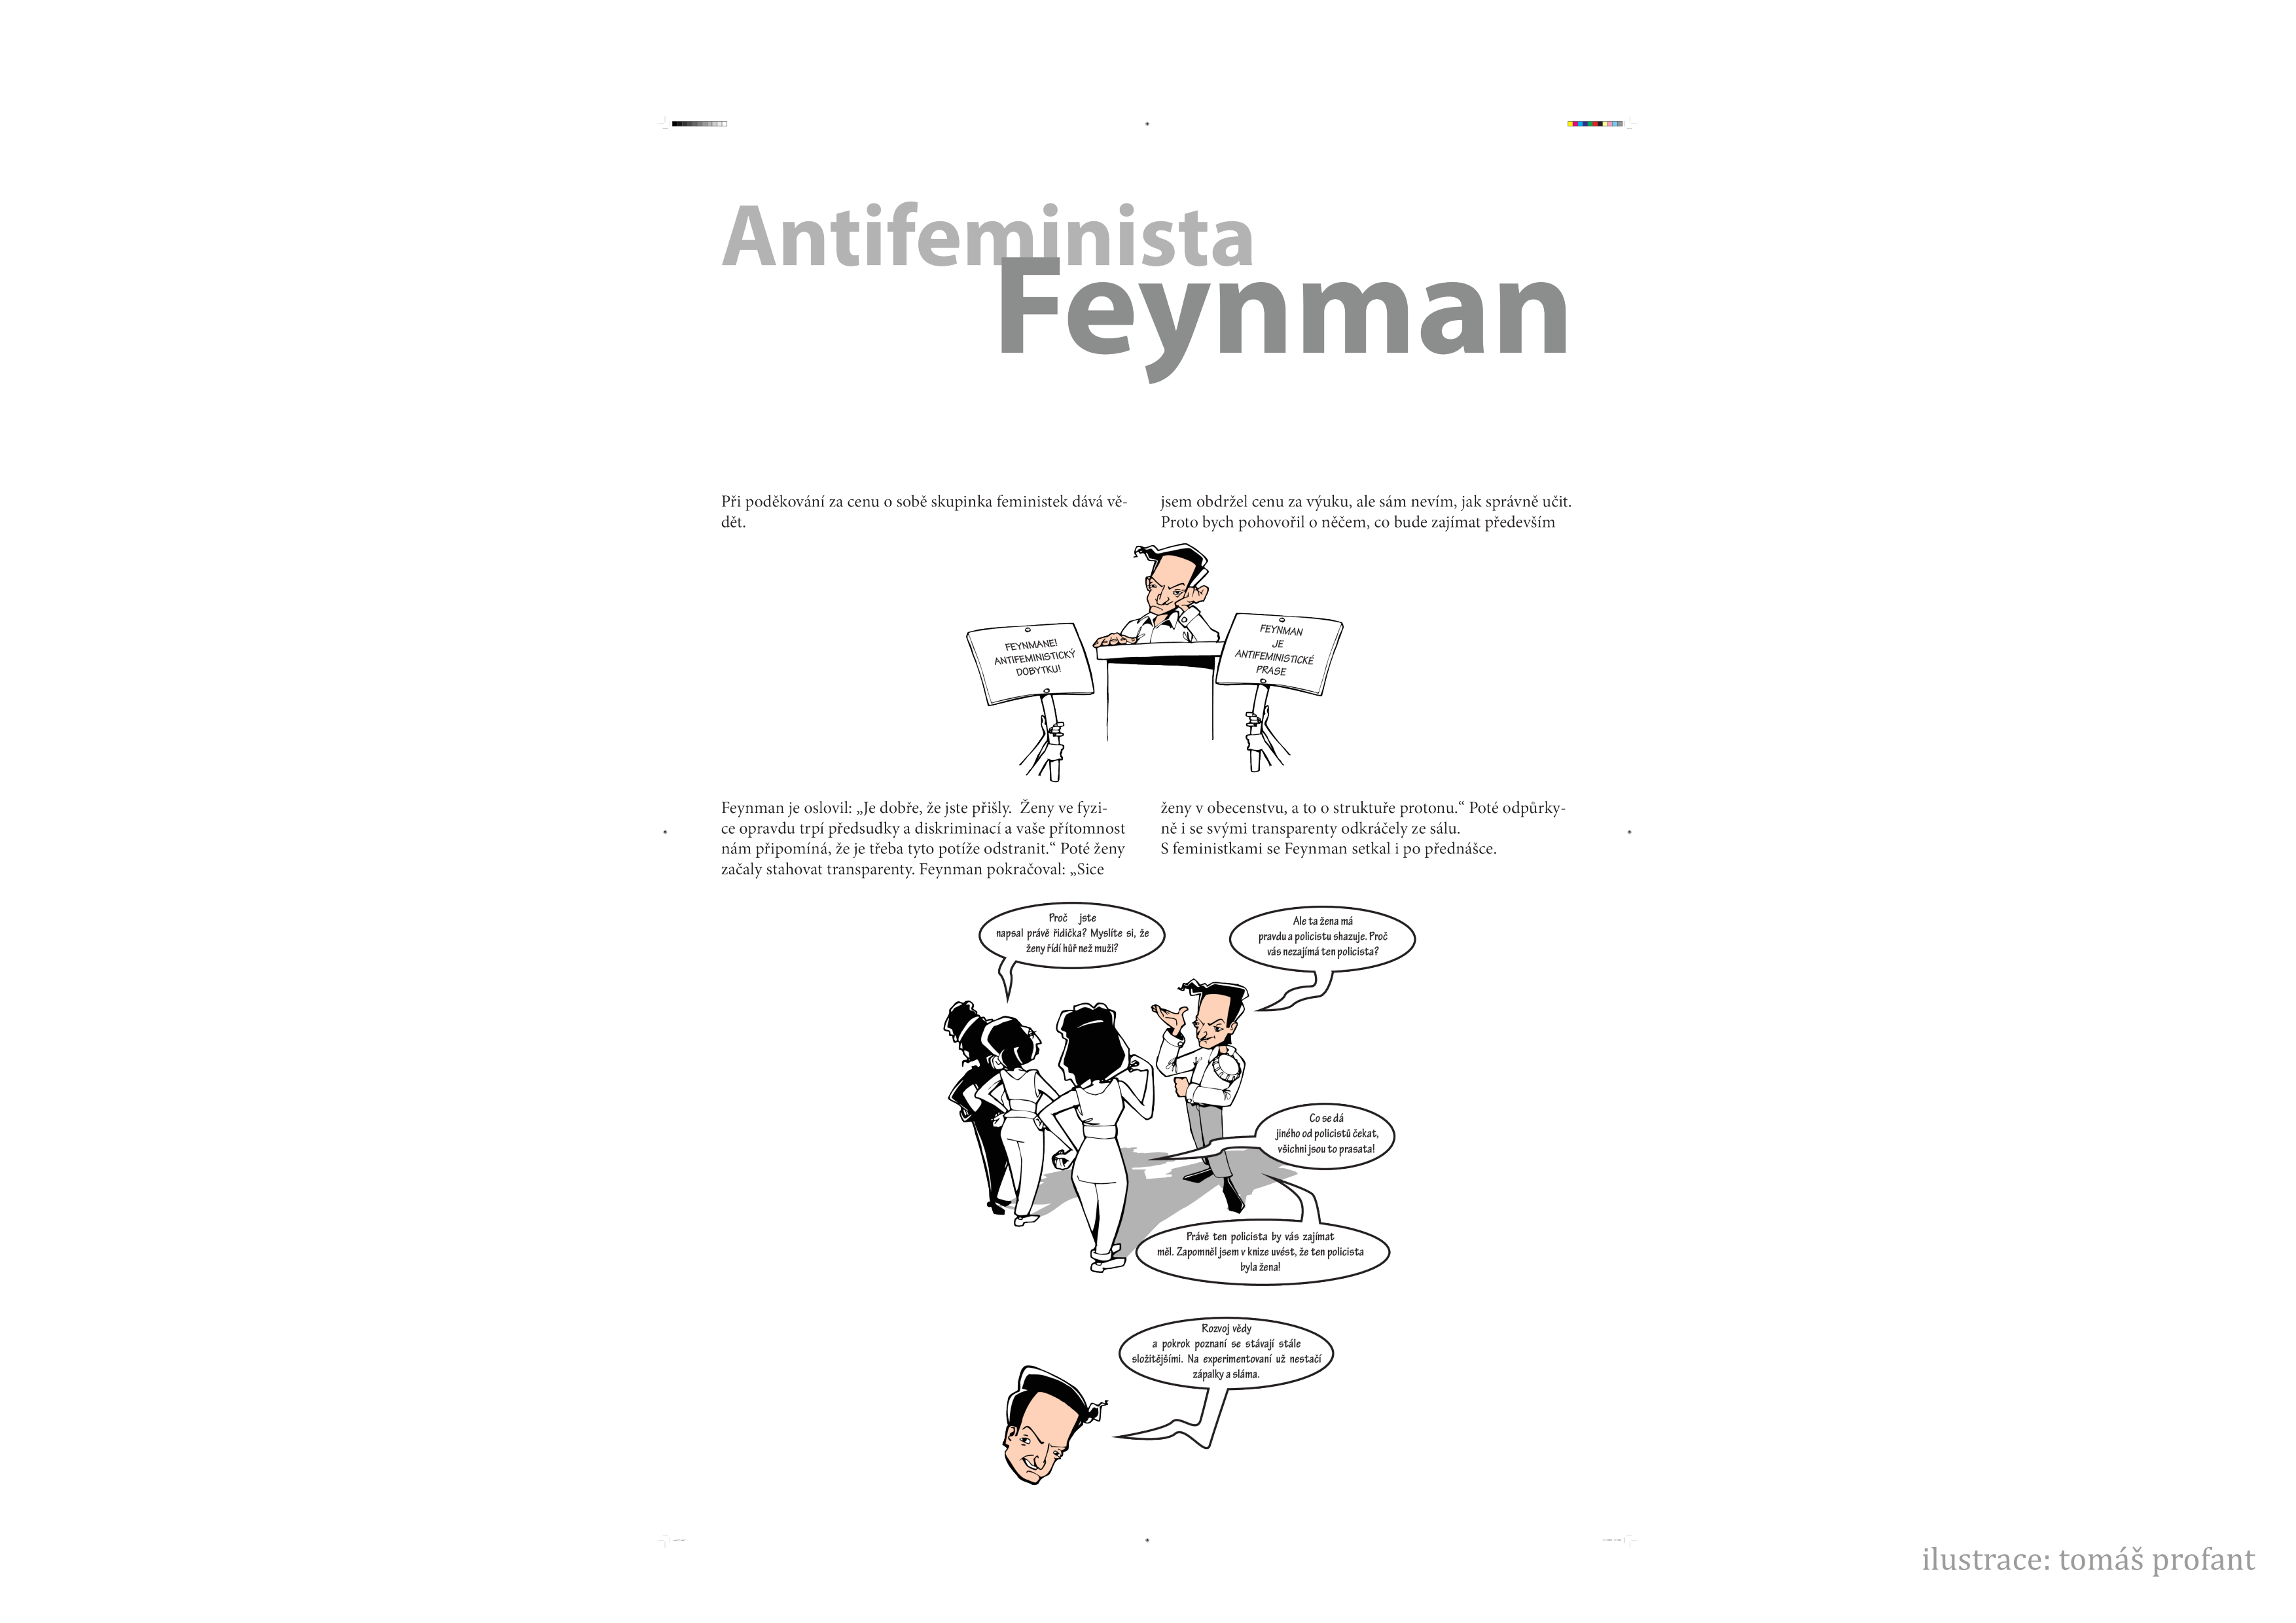 _images/feynman-str%C3%A1nka012.png